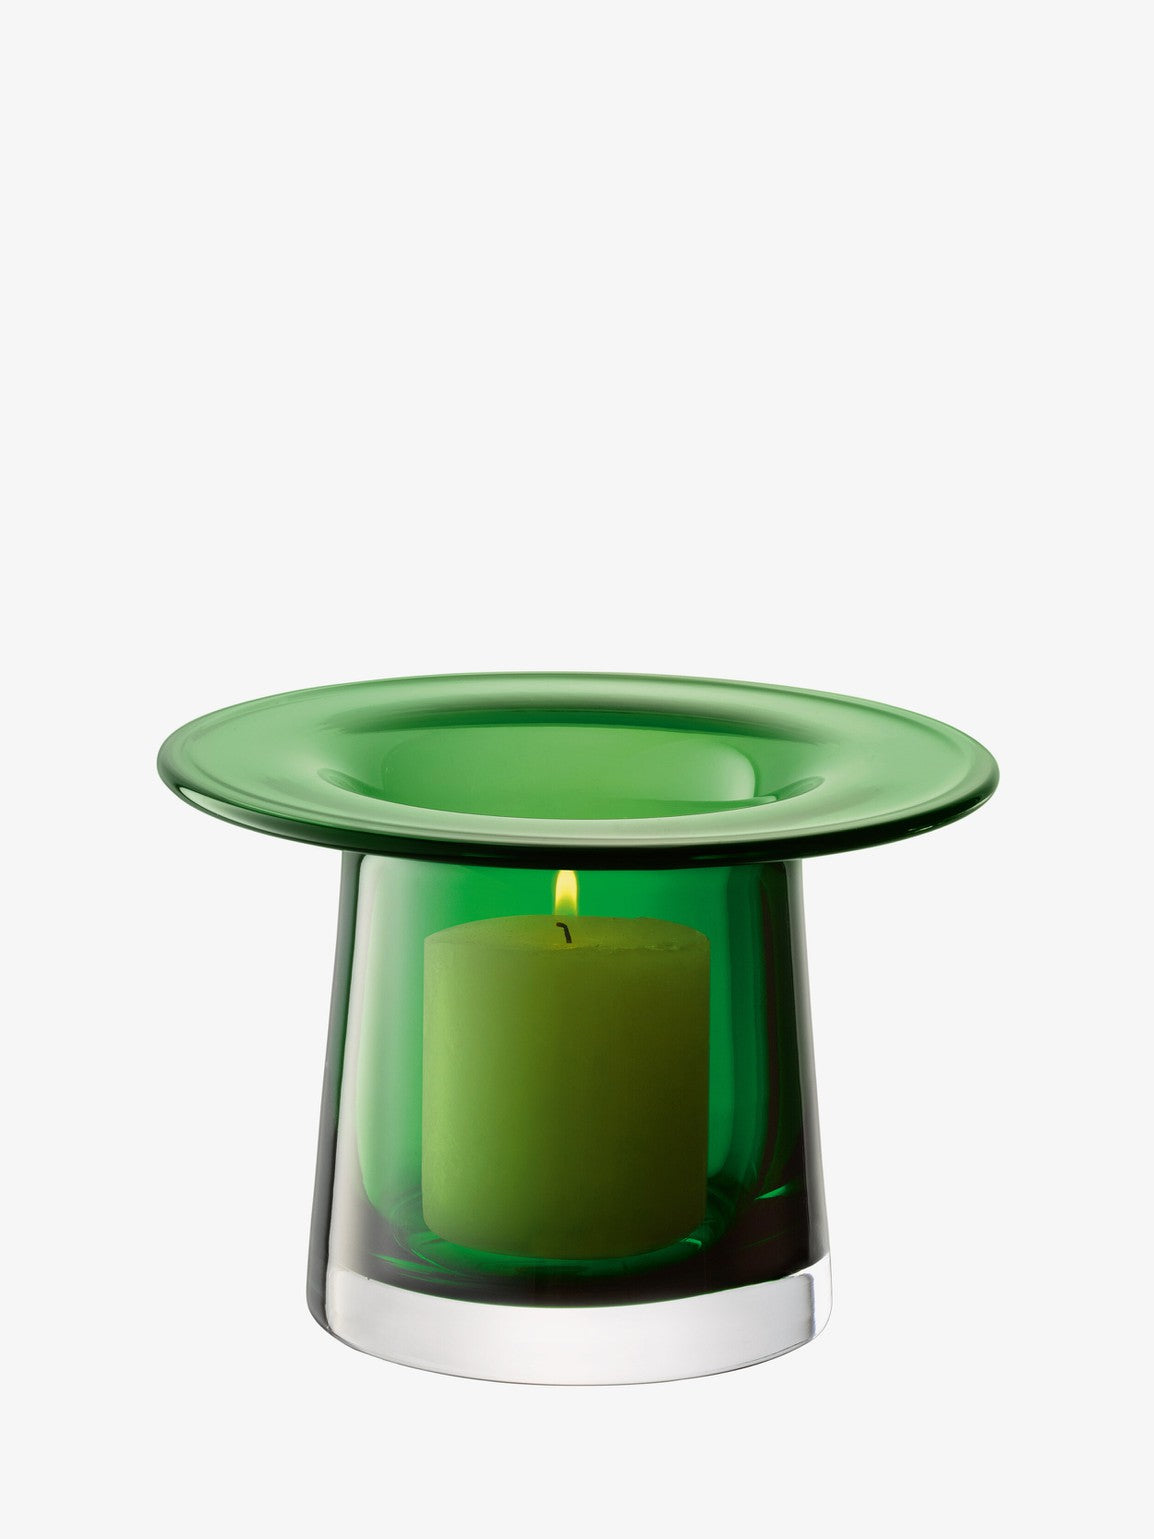 Victoria Vase/Lantern in Fern Green